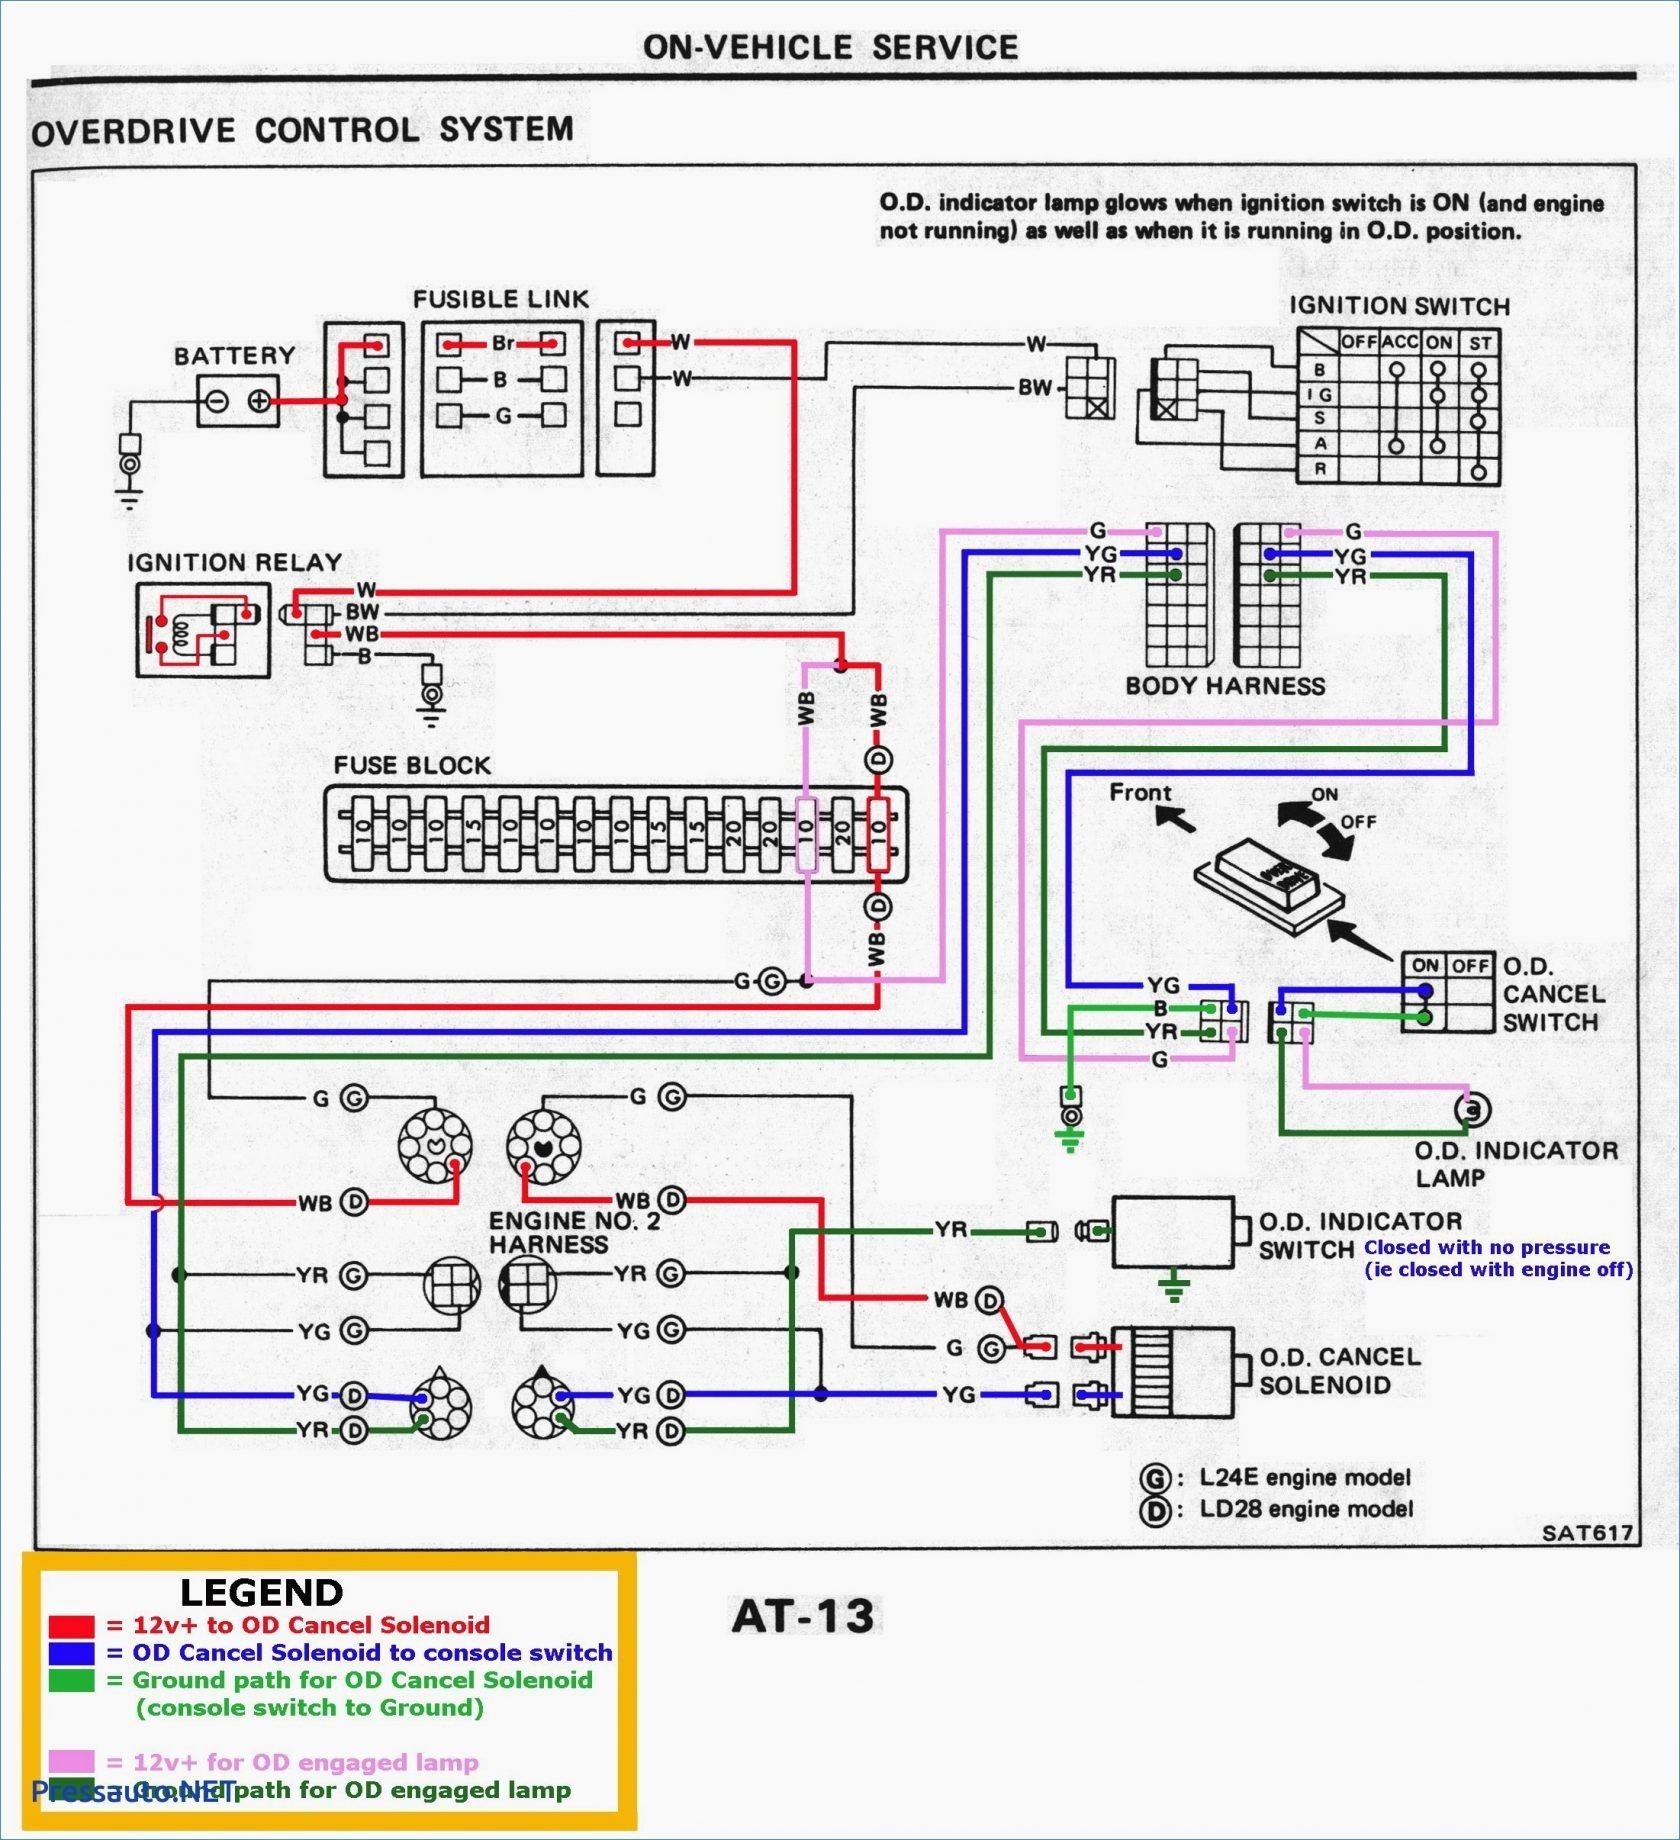 Ouku Car Dvd Player Wiring Diagram Dvd Wiring Diagram Wiring Diagram for You Of Ouku Car Dvd Player Wiring Diagram